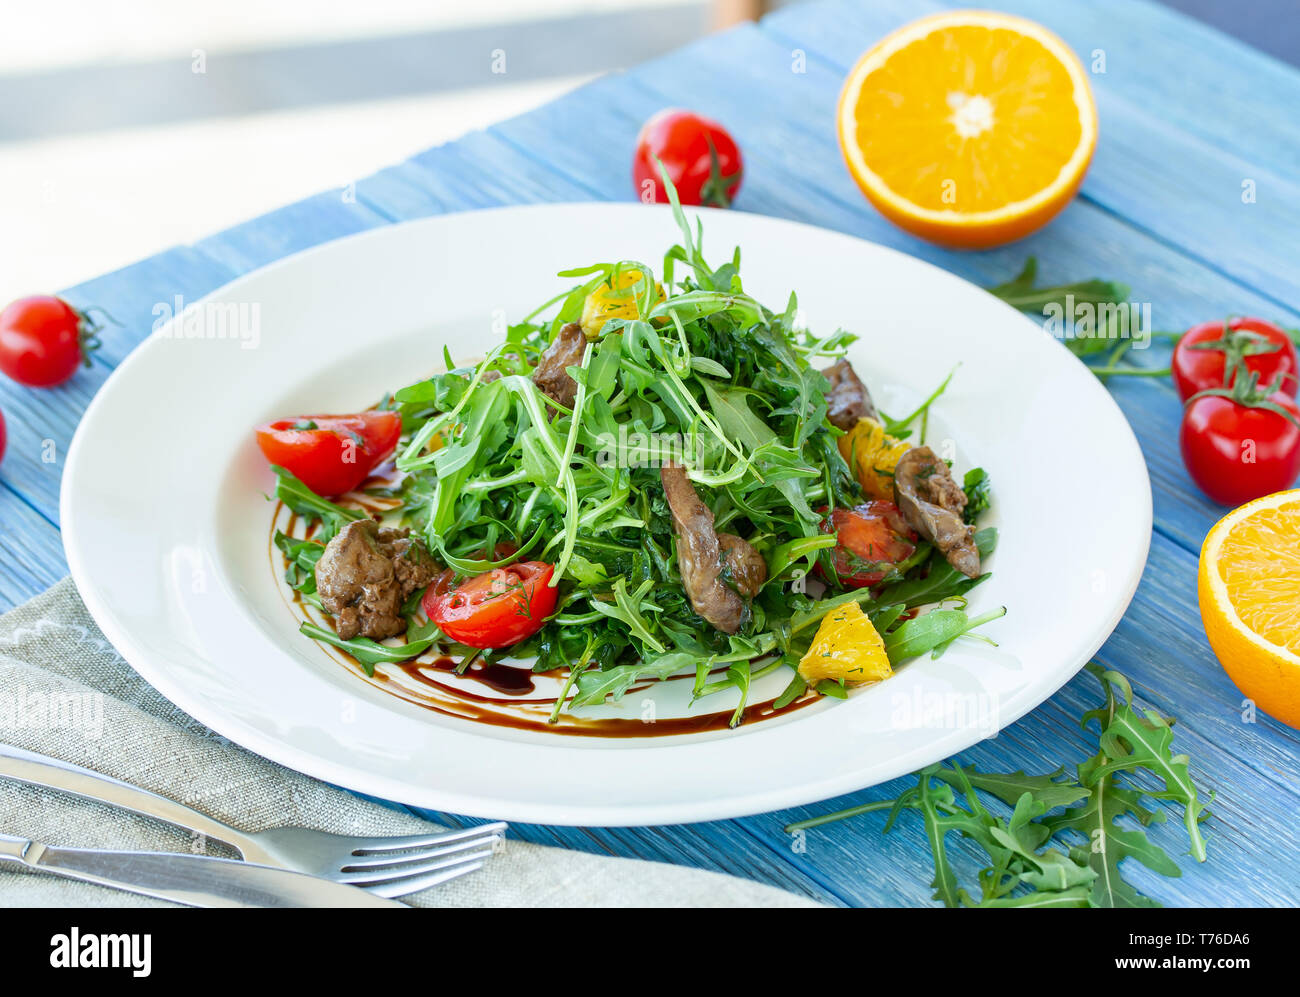 Salat mit Huhn Leber, Rucola, Orangen und Tomaten auf einer Platte an einem sonnigen Tag Stockfoto